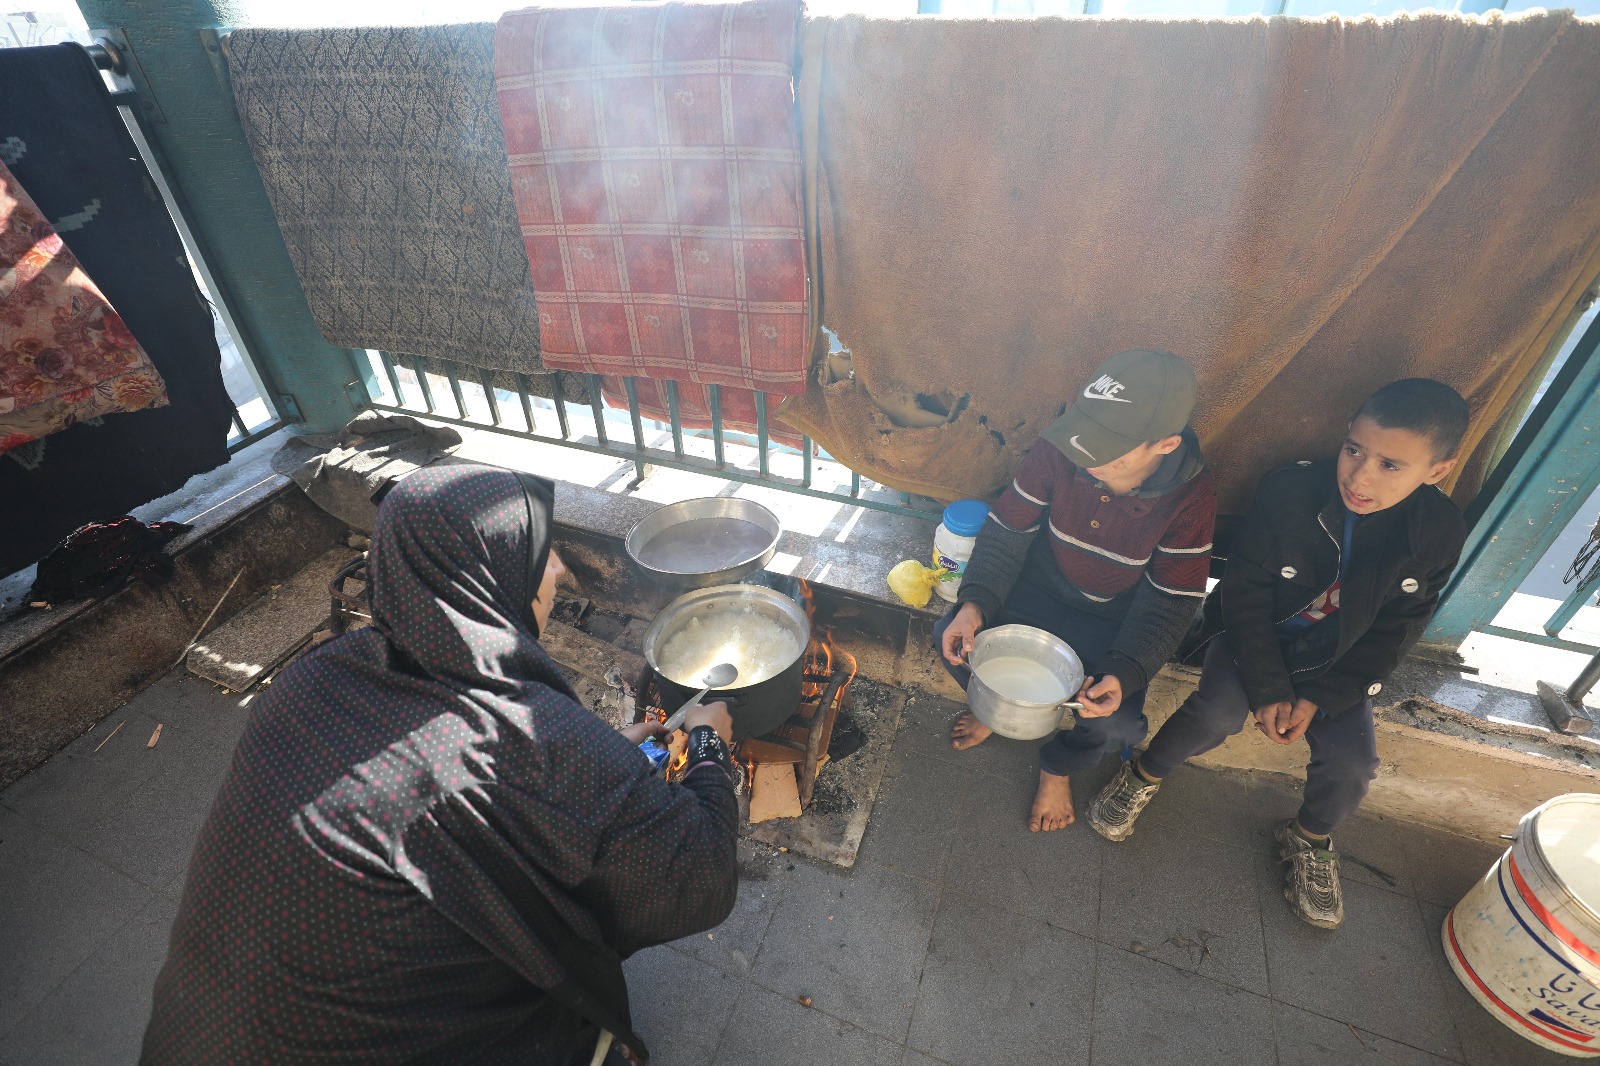 Yerinden edilmiş Filistinli aileler, açlıkla mücadele ediyor